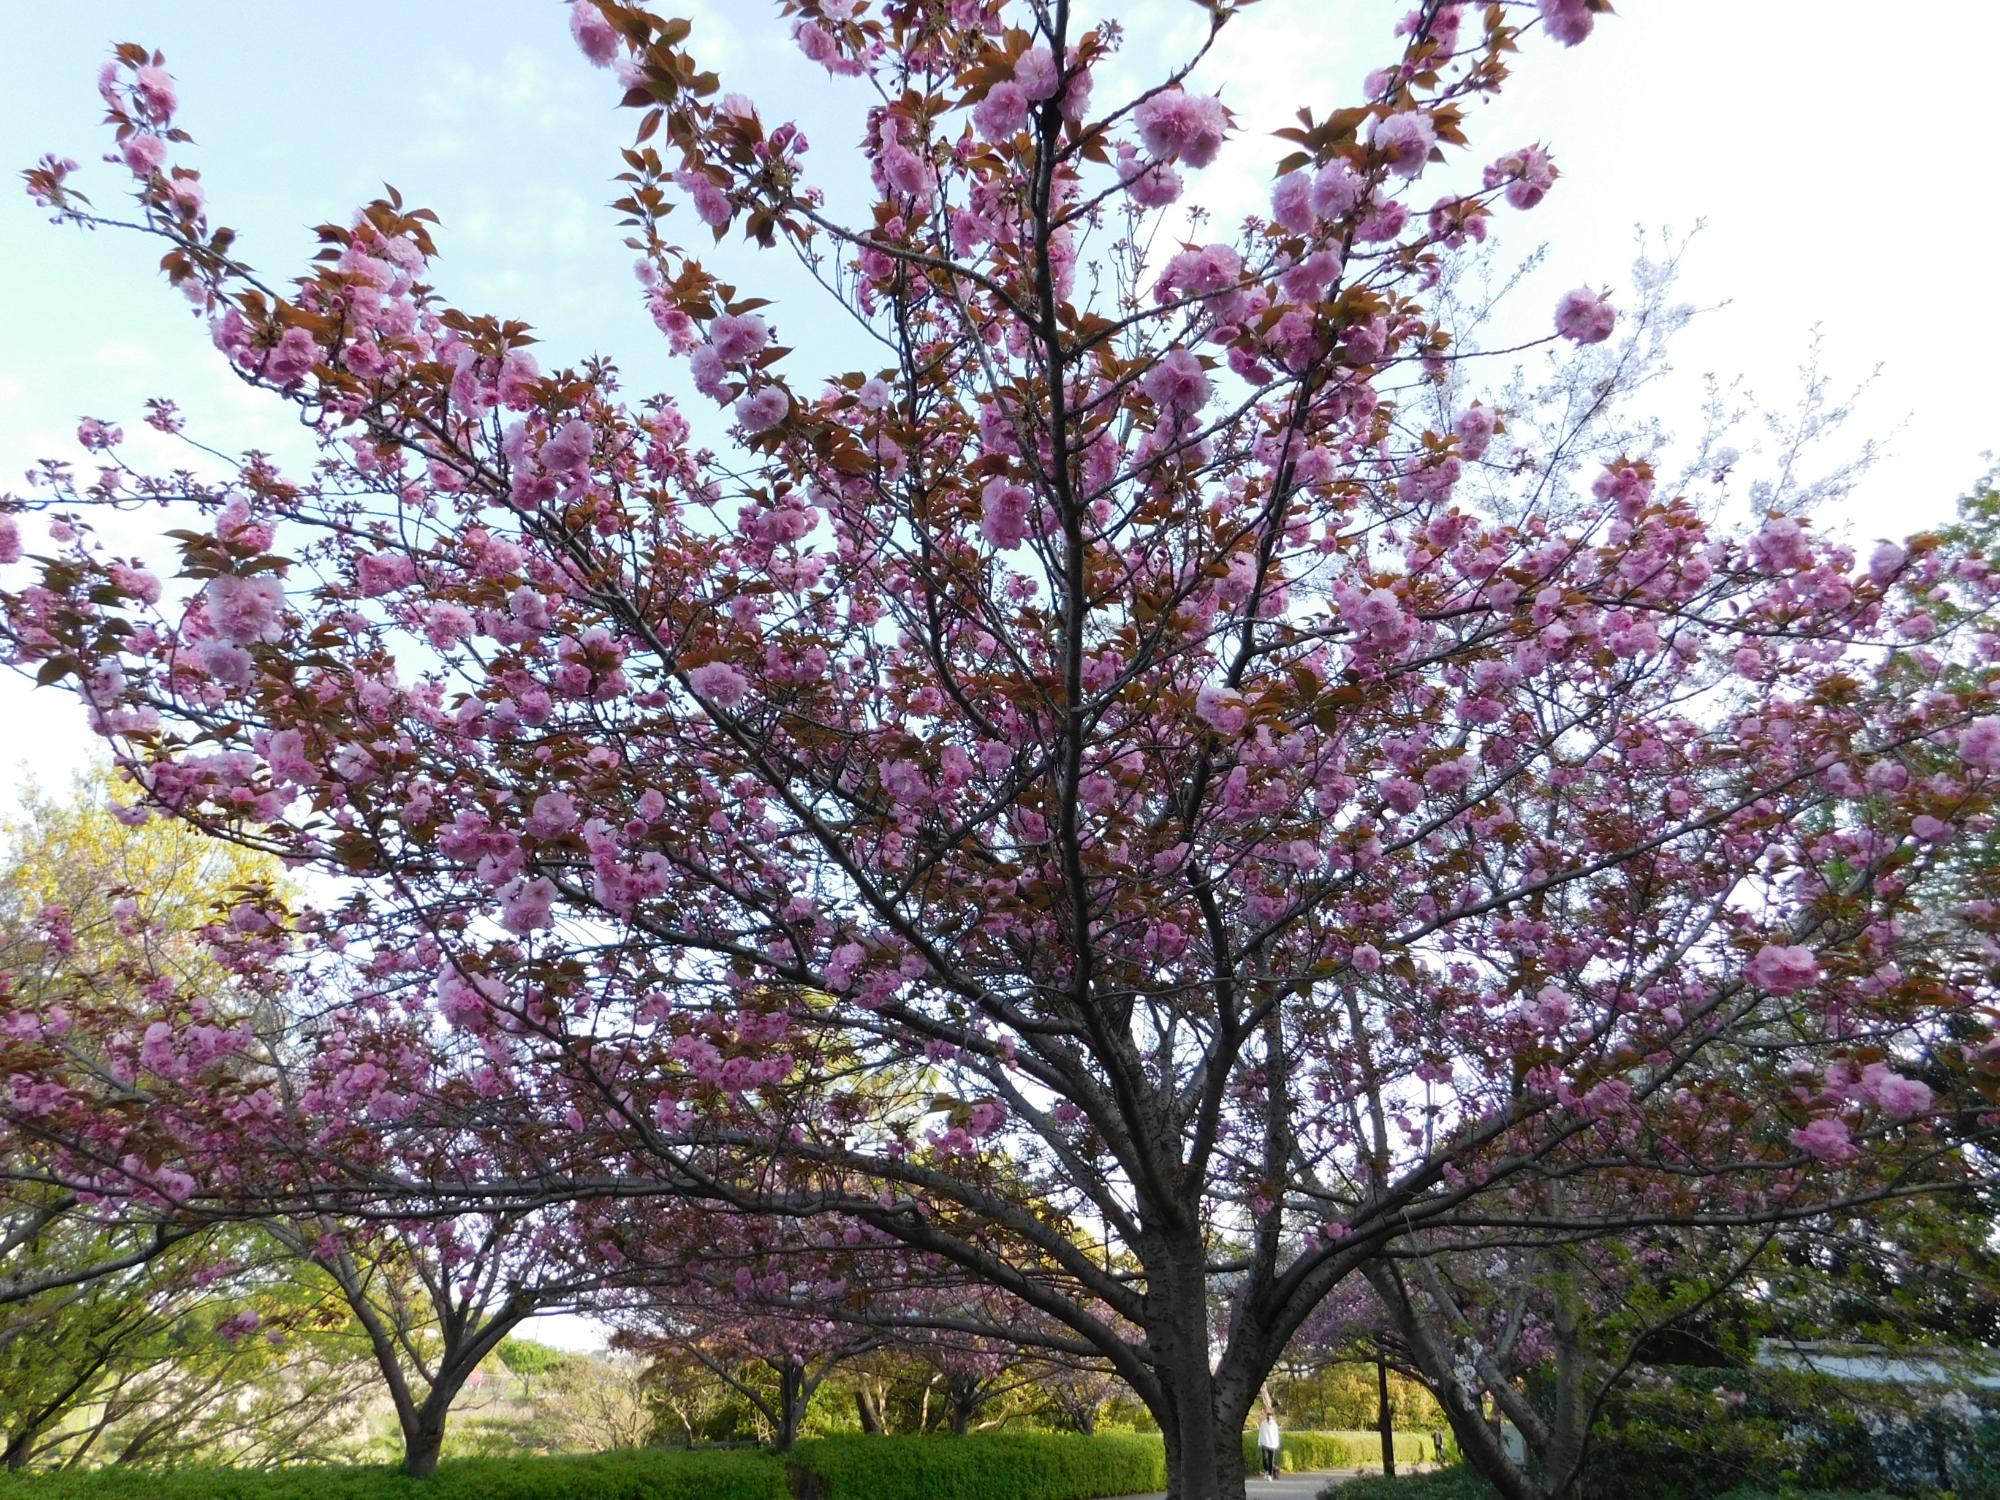 沿道沿いのヤエザクラの花が見頃となっていて、桜並木がきれいです。